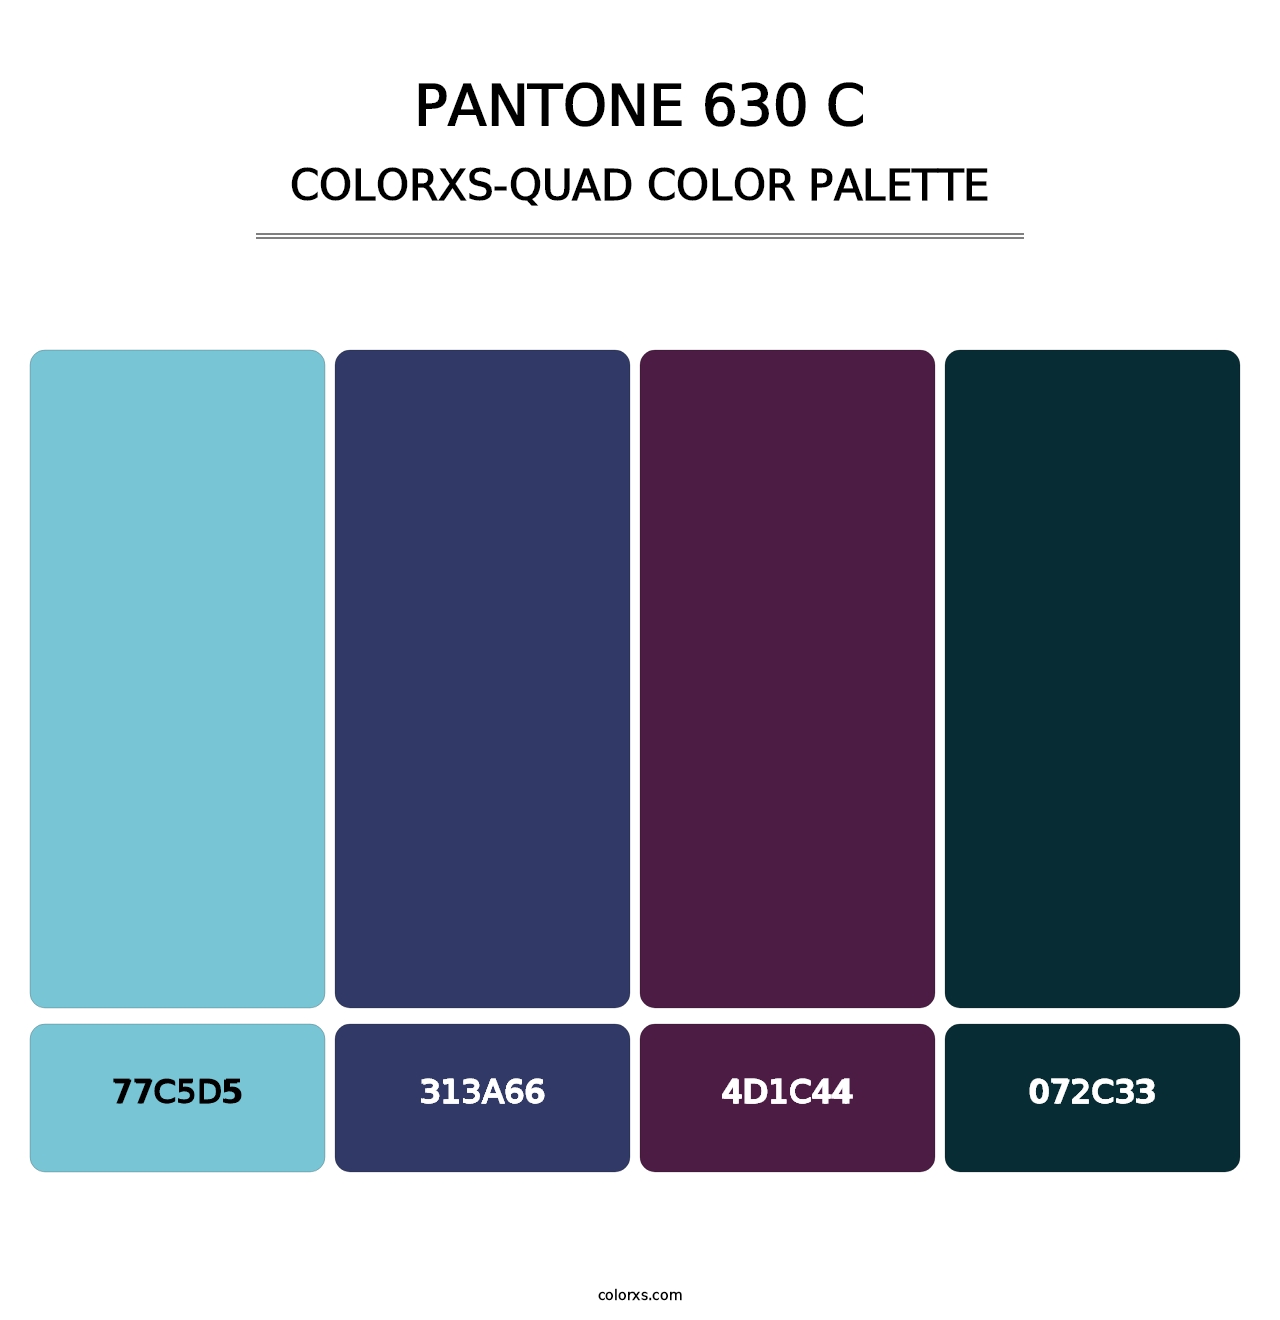 PANTONE 630 C - Colorxs Quad Palette